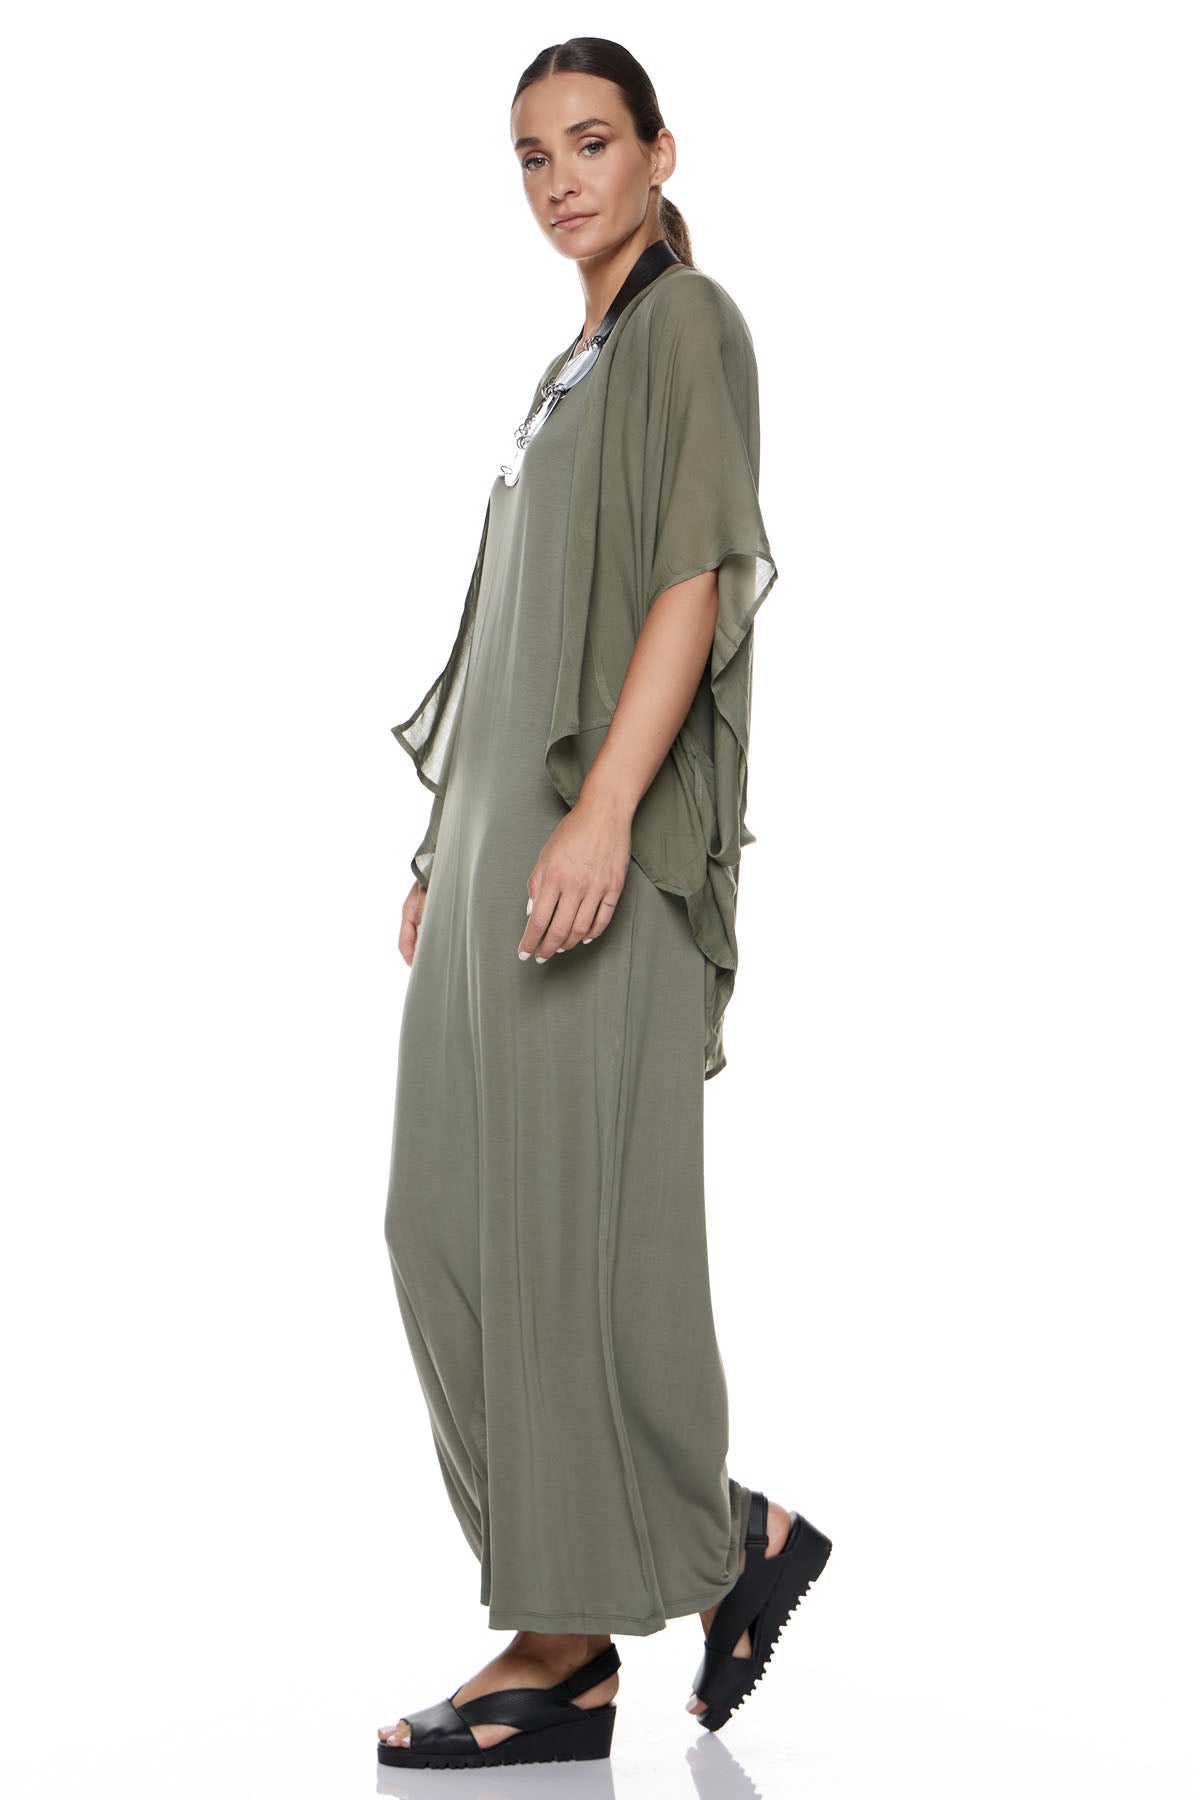 Chic & Simple Combination Dress (Basics) Shawl & Lemere Jacket - Khaki